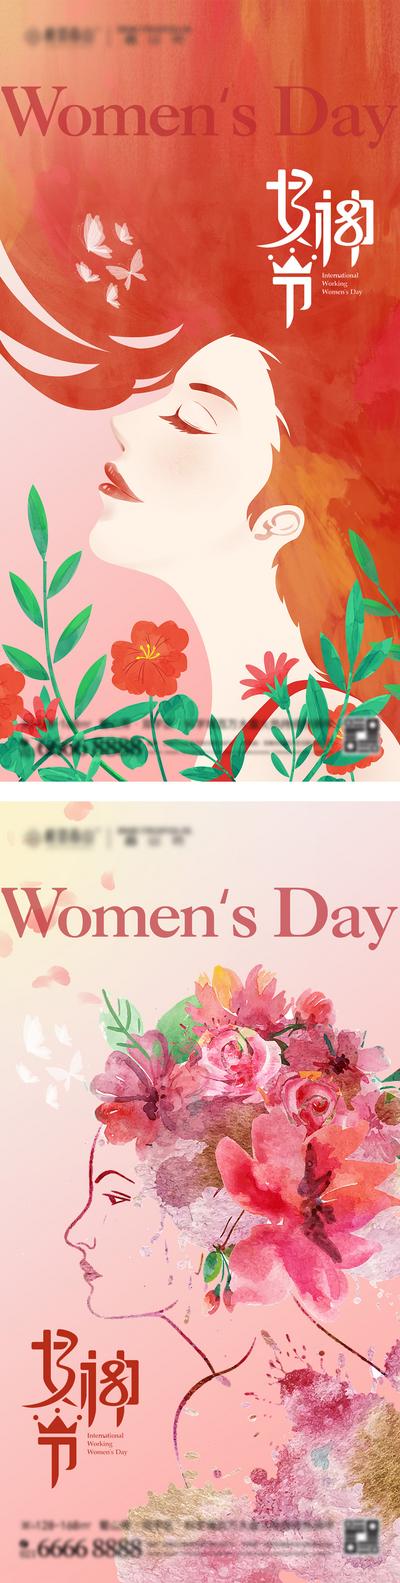 南门网 广告 海报 插画 妇女节 节日 系列 房地产 38 女神节 女王节 手绘 女性